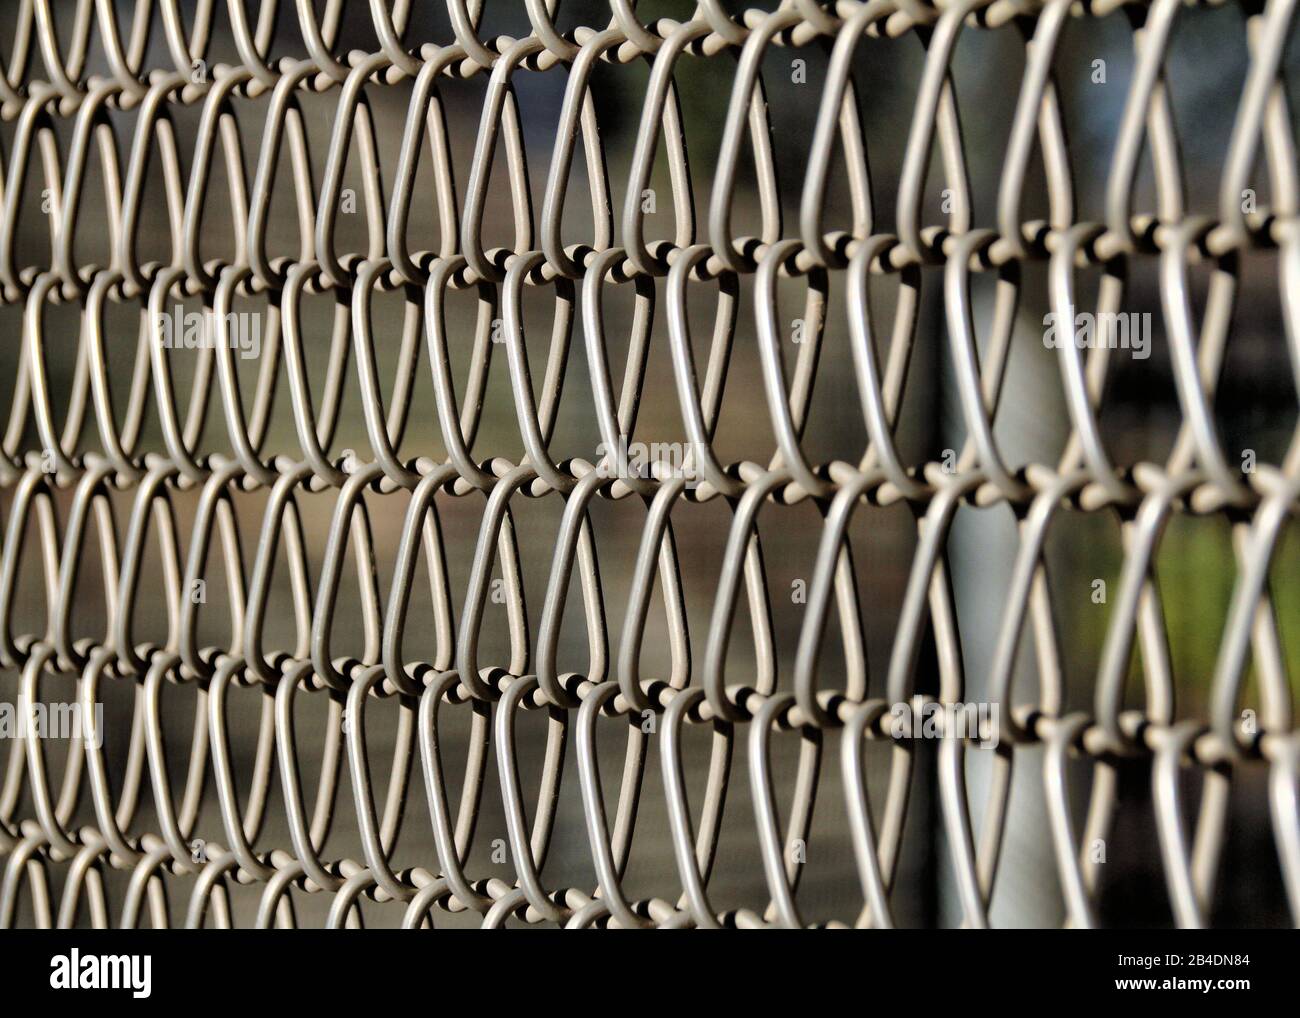 Eine Nahansicht der Metallverbindungen eines Kettengliederzauns macht ein attraktives abstraktes Muster. Stockfoto